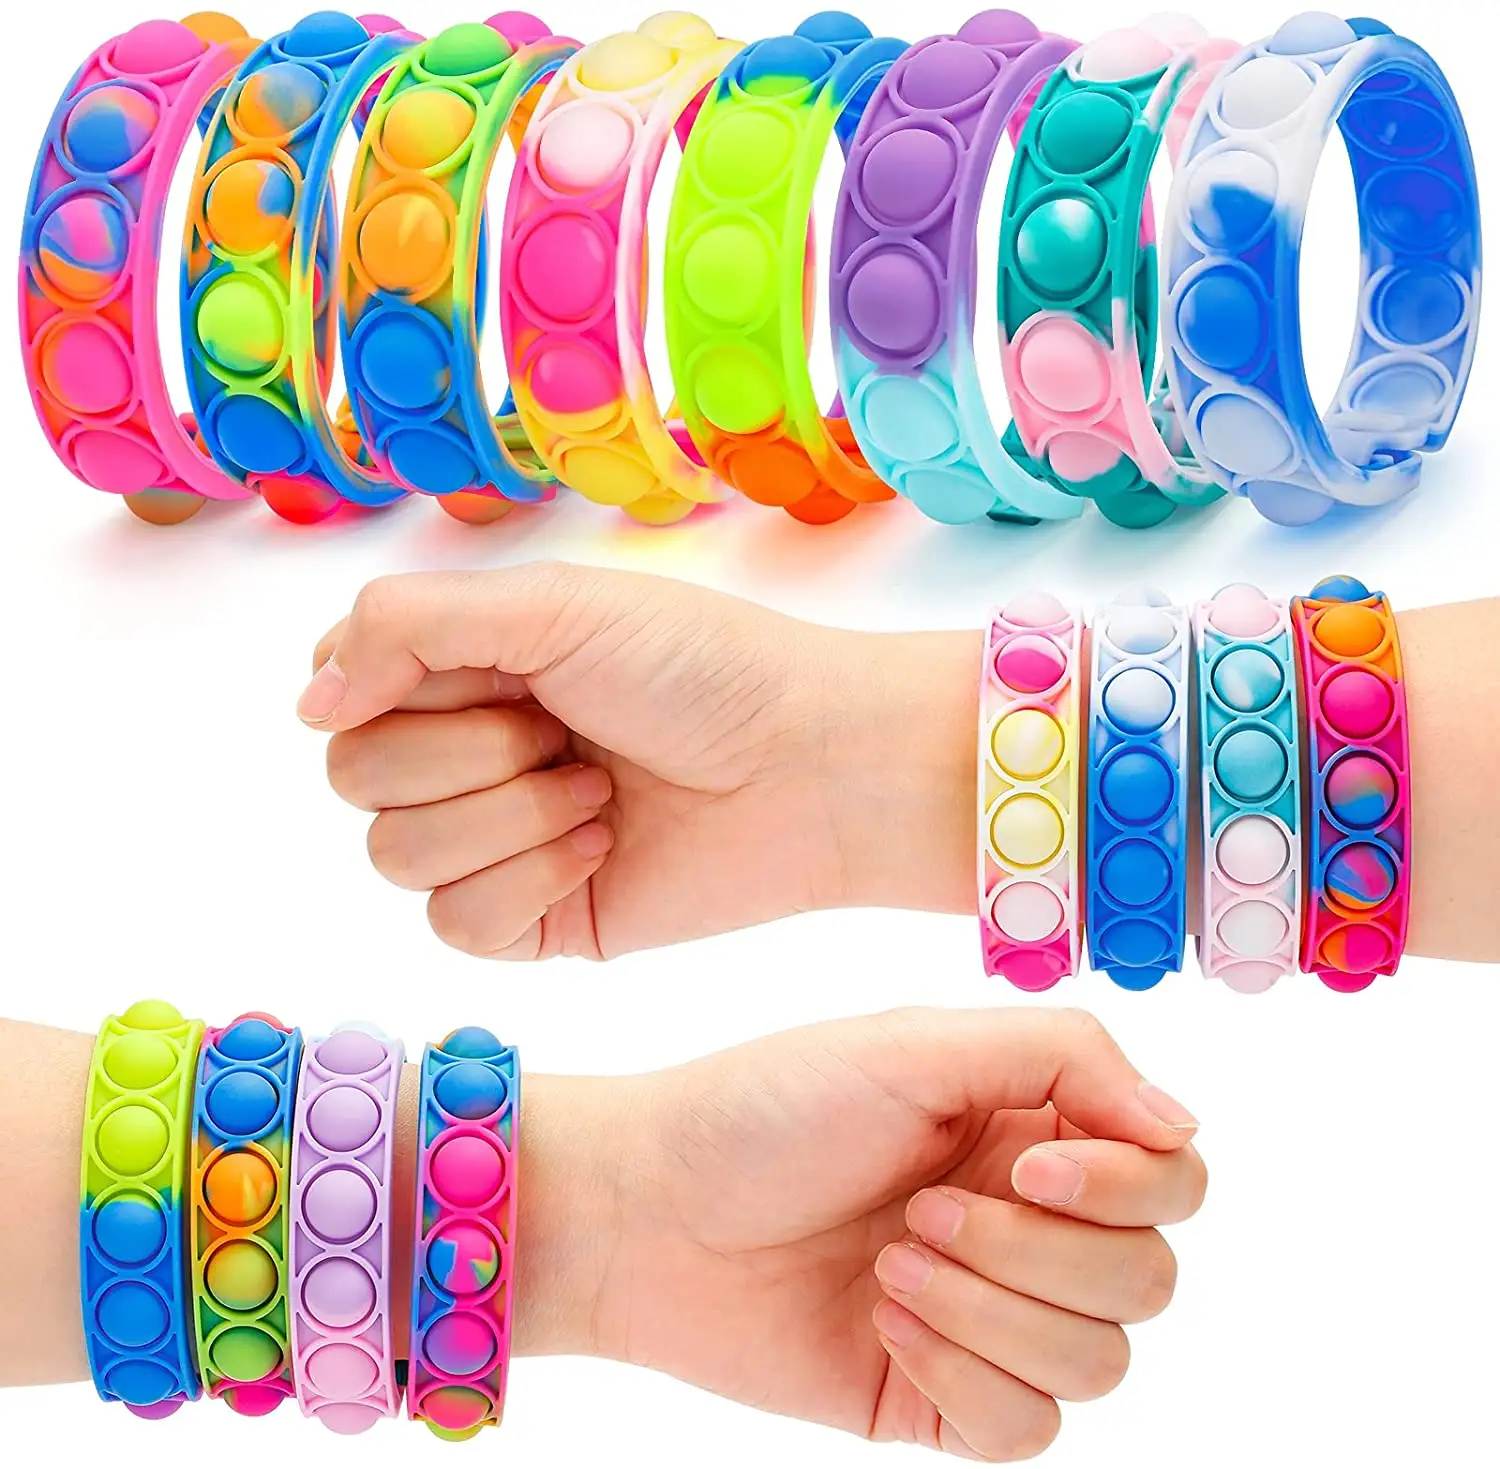 Silicone Căng Thẳng Cứu Trợ Dây Đeo Cổ Tay Fidget Đồ Chơi, Wearable Đẩy Pop Bong Bóng Cảm Giác Fidget Hand Finger Press Silicone Bracelet Toy